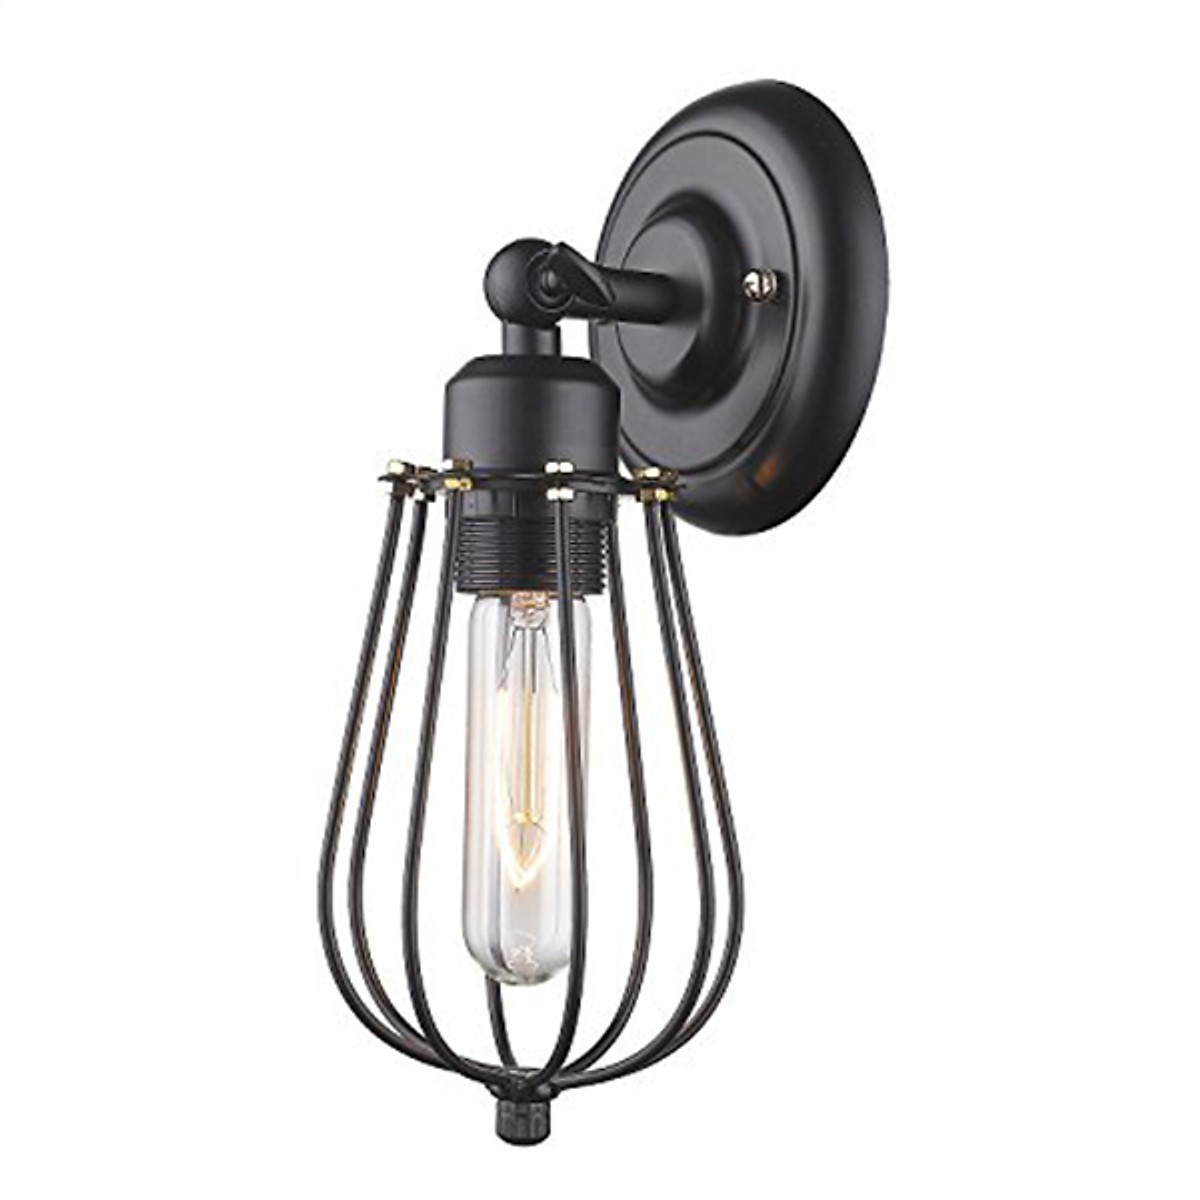 Đèn gắn tường - đèn vách - đèn tường - đèn cầu thang hình quả lê cao cấp LELOMI kèm LED Edision